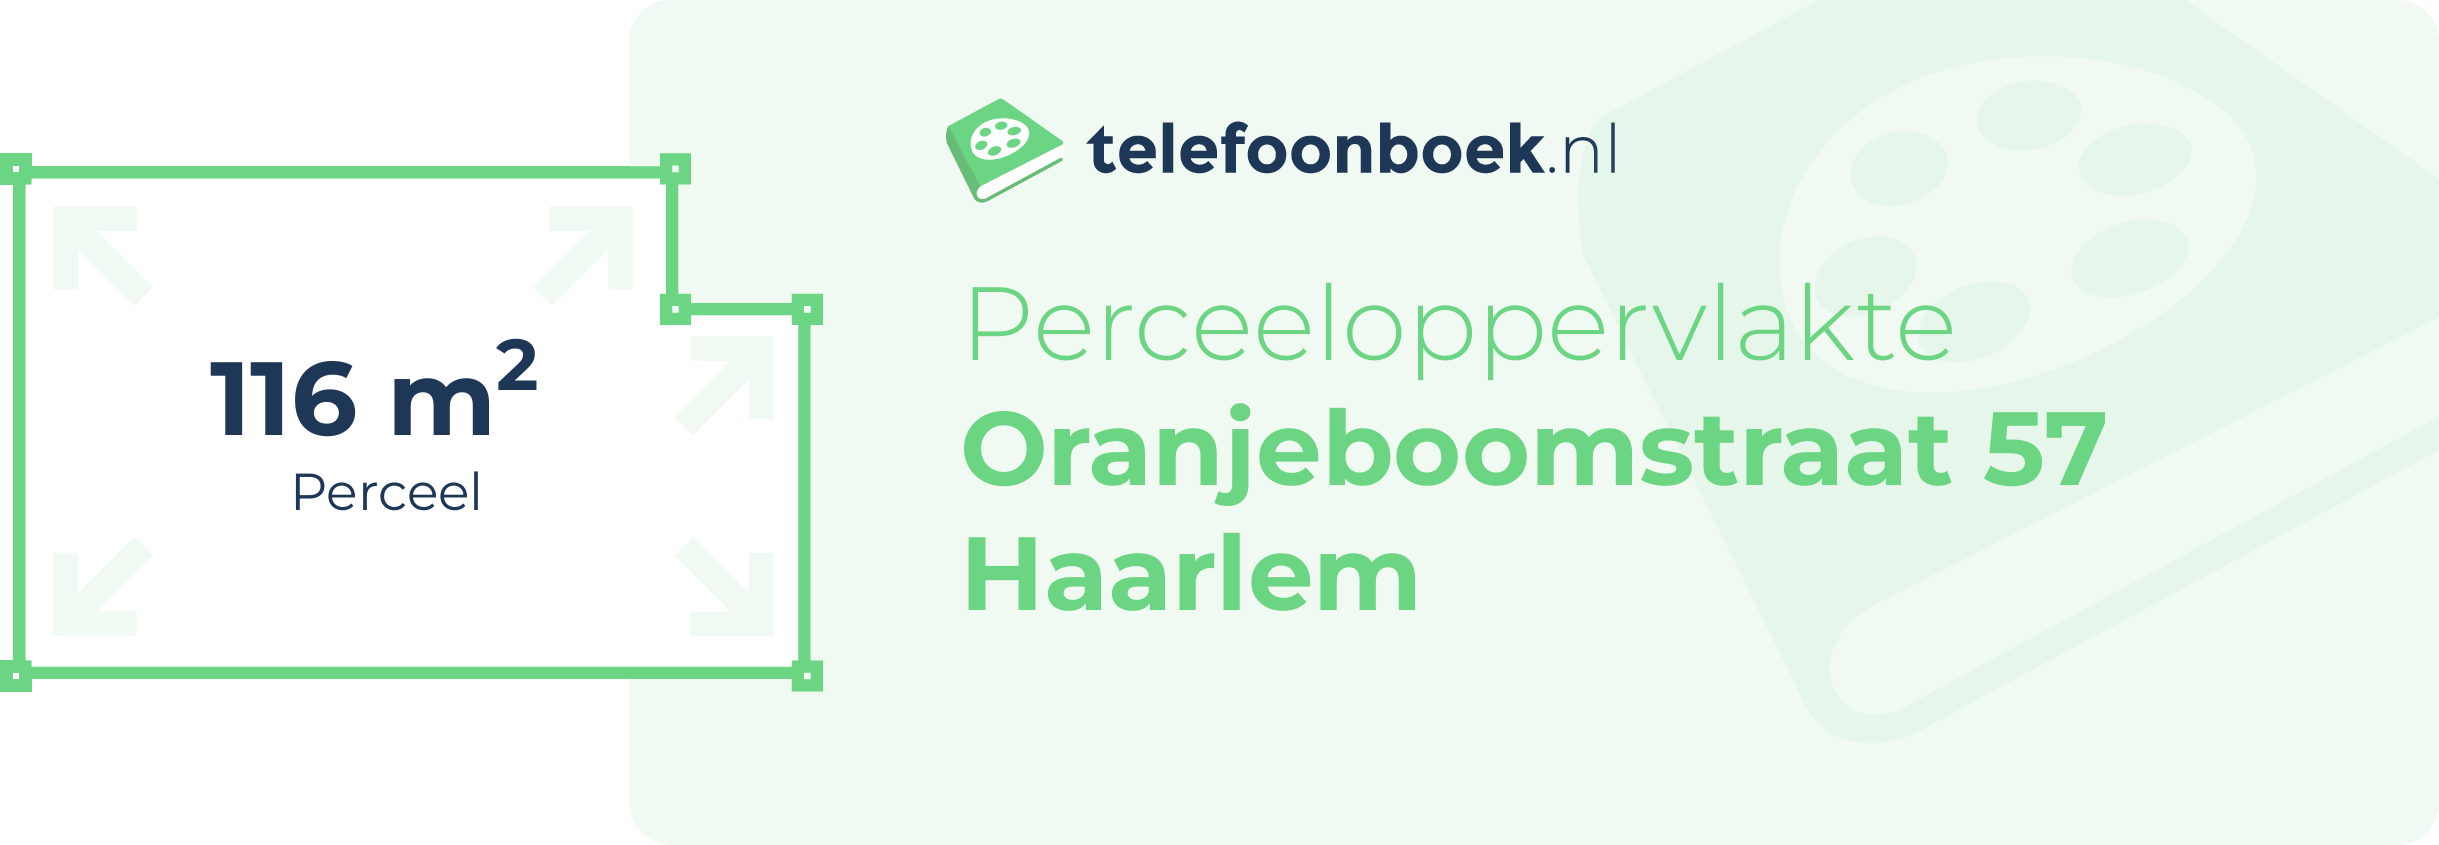 Perceeloppervlakte Oranjeboomstraat 57 Haarlem